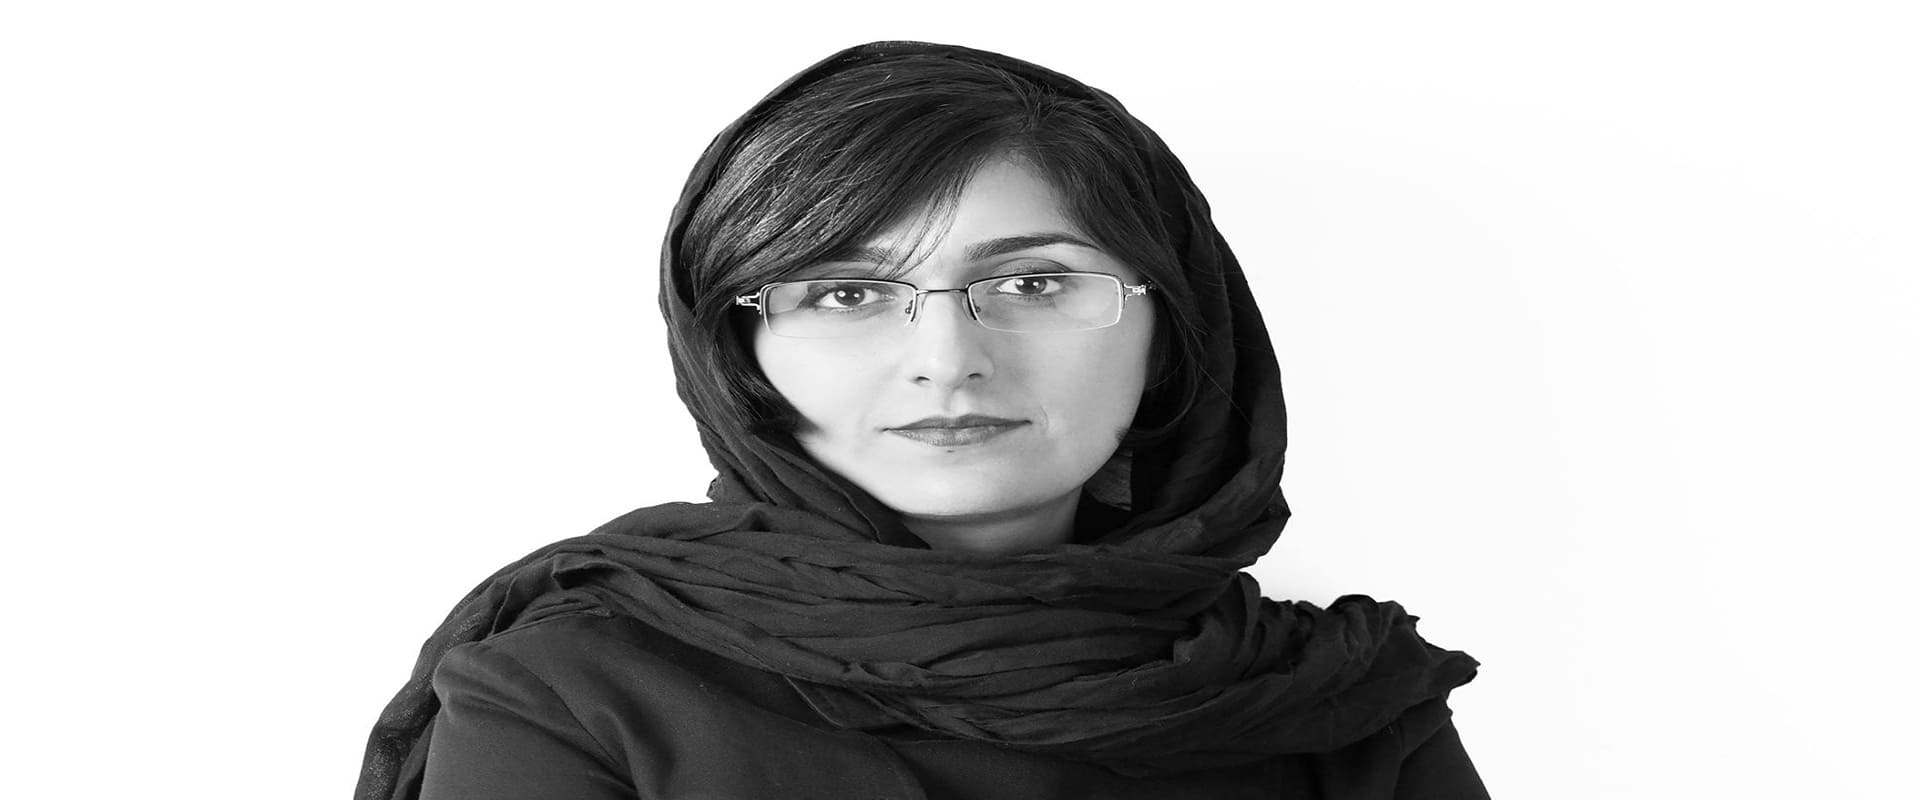 لیست زنان معمار ایرانی| تهران دیزاین سنتر